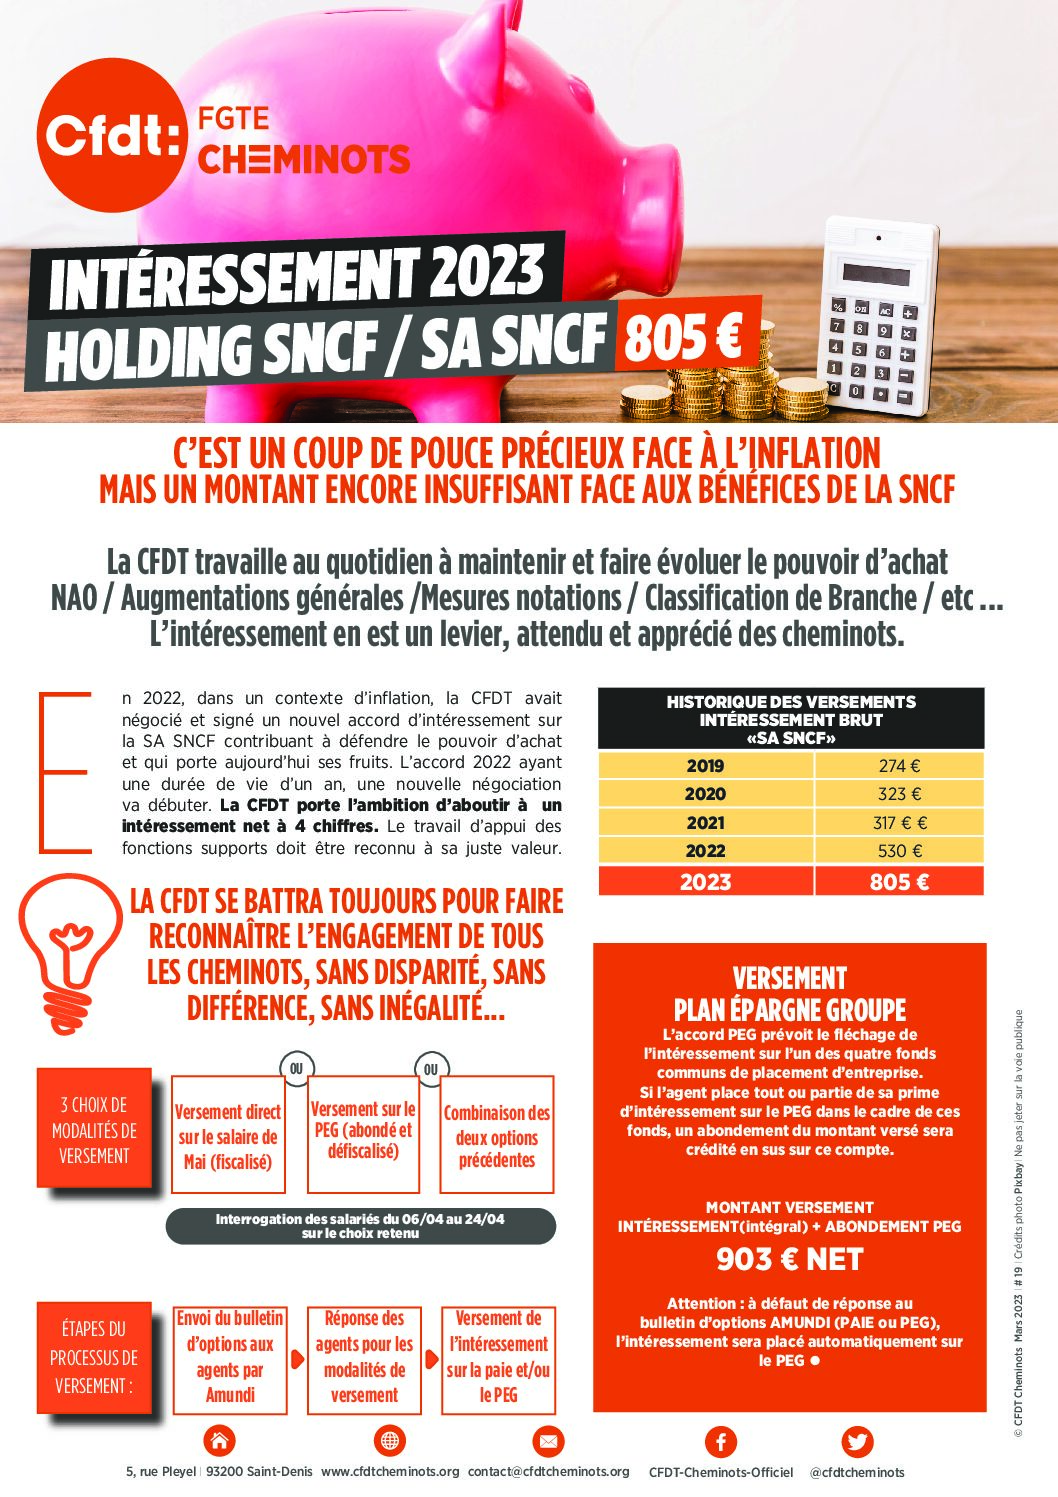 Intéressement Holding SNCF / SA SNCF